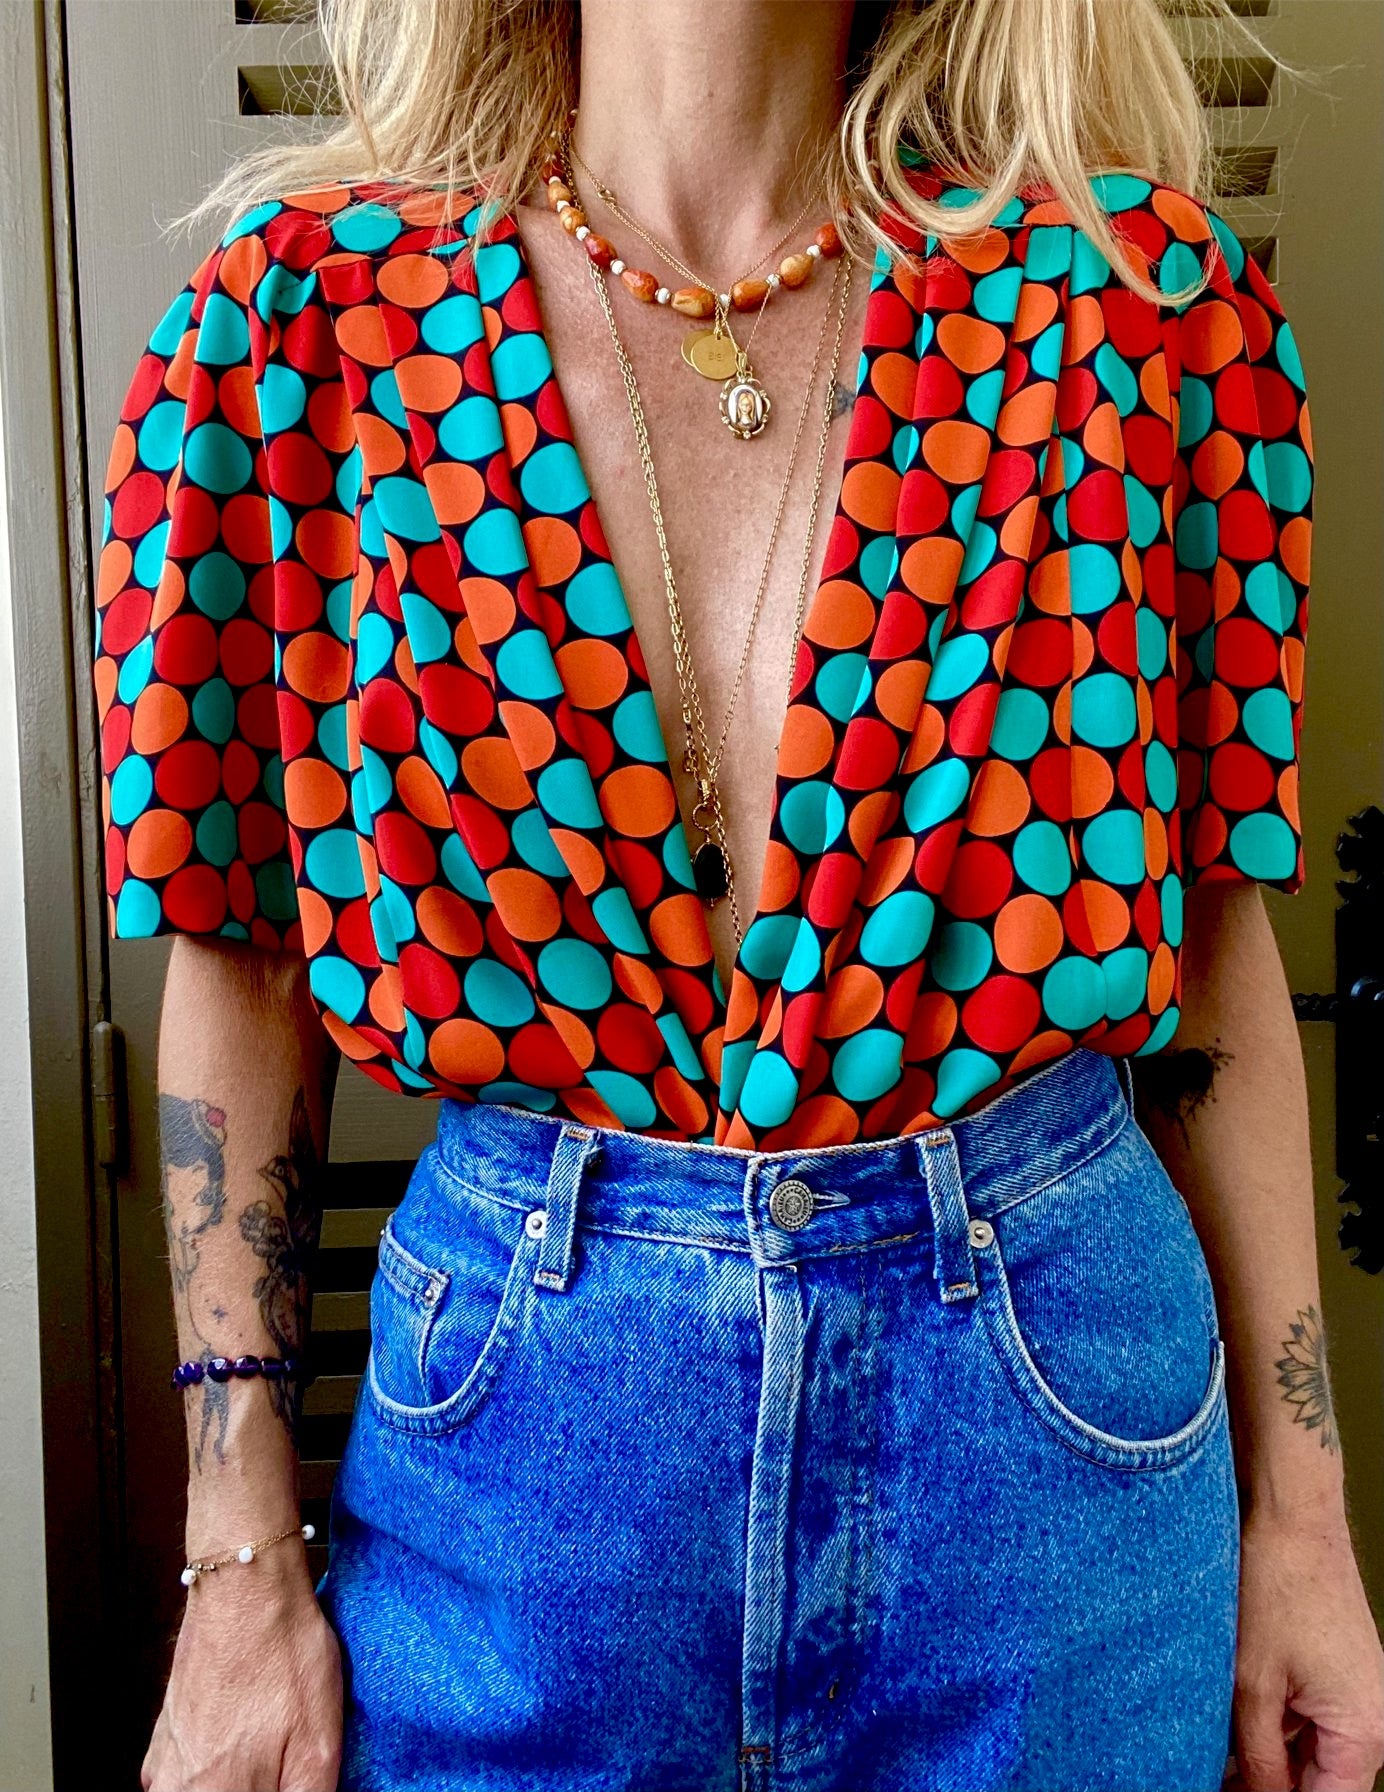 Magnifique blouse des années 80 basque